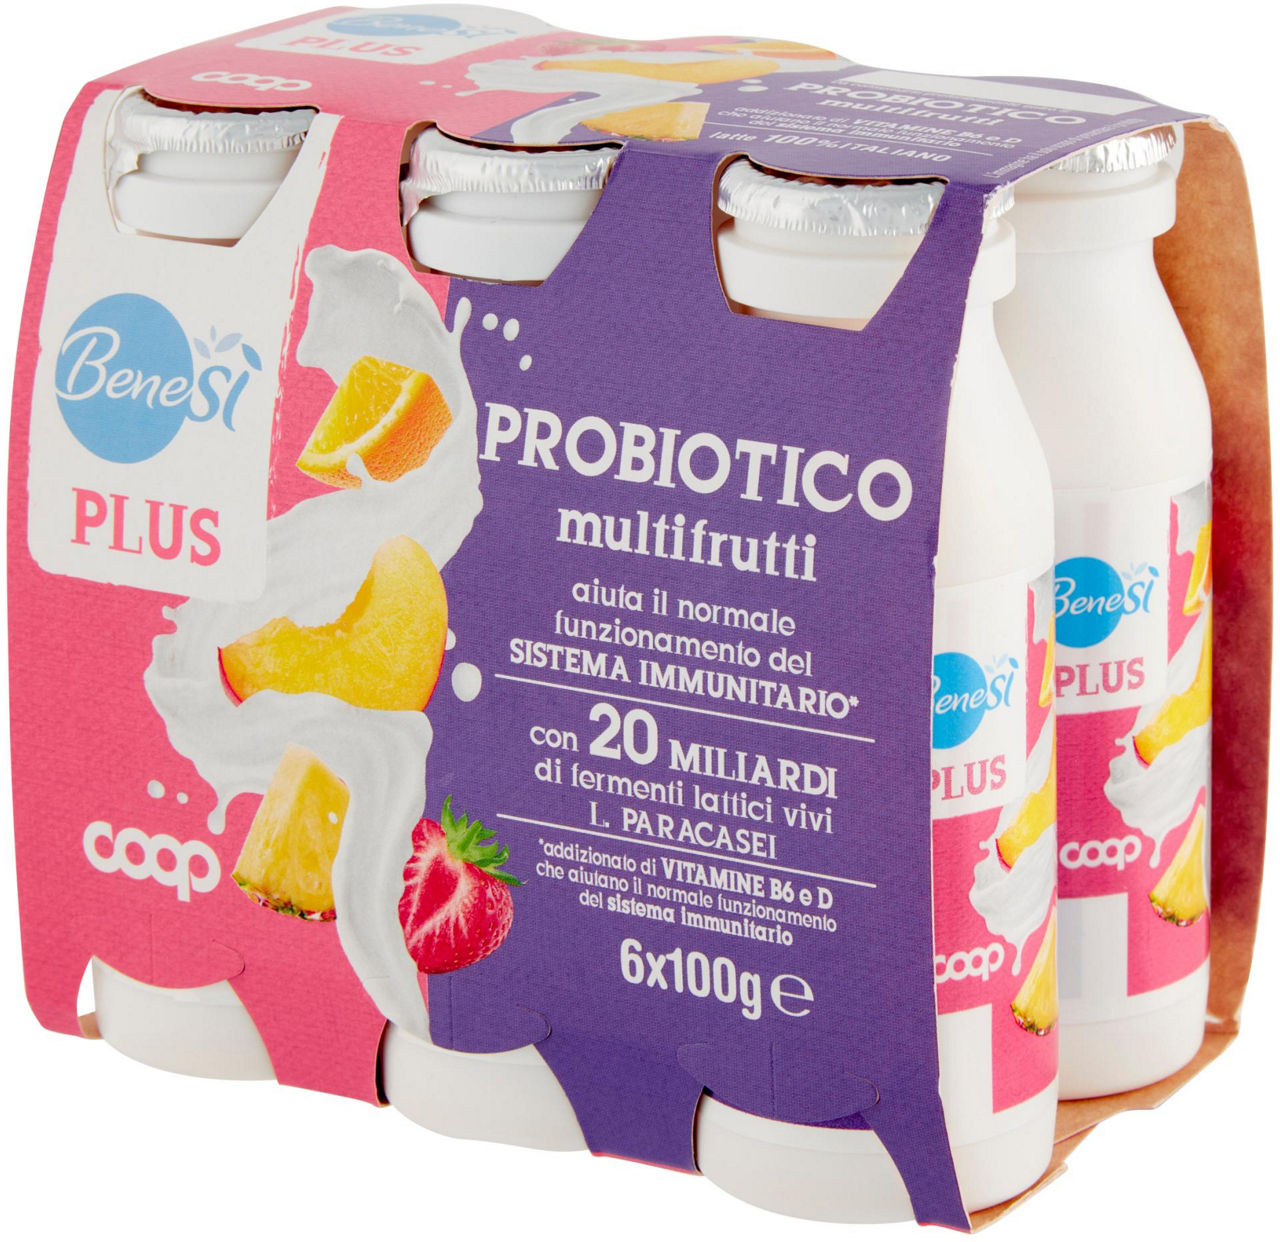 Probiotico multifrutti Benes' Plus 6 x 100 g - 6